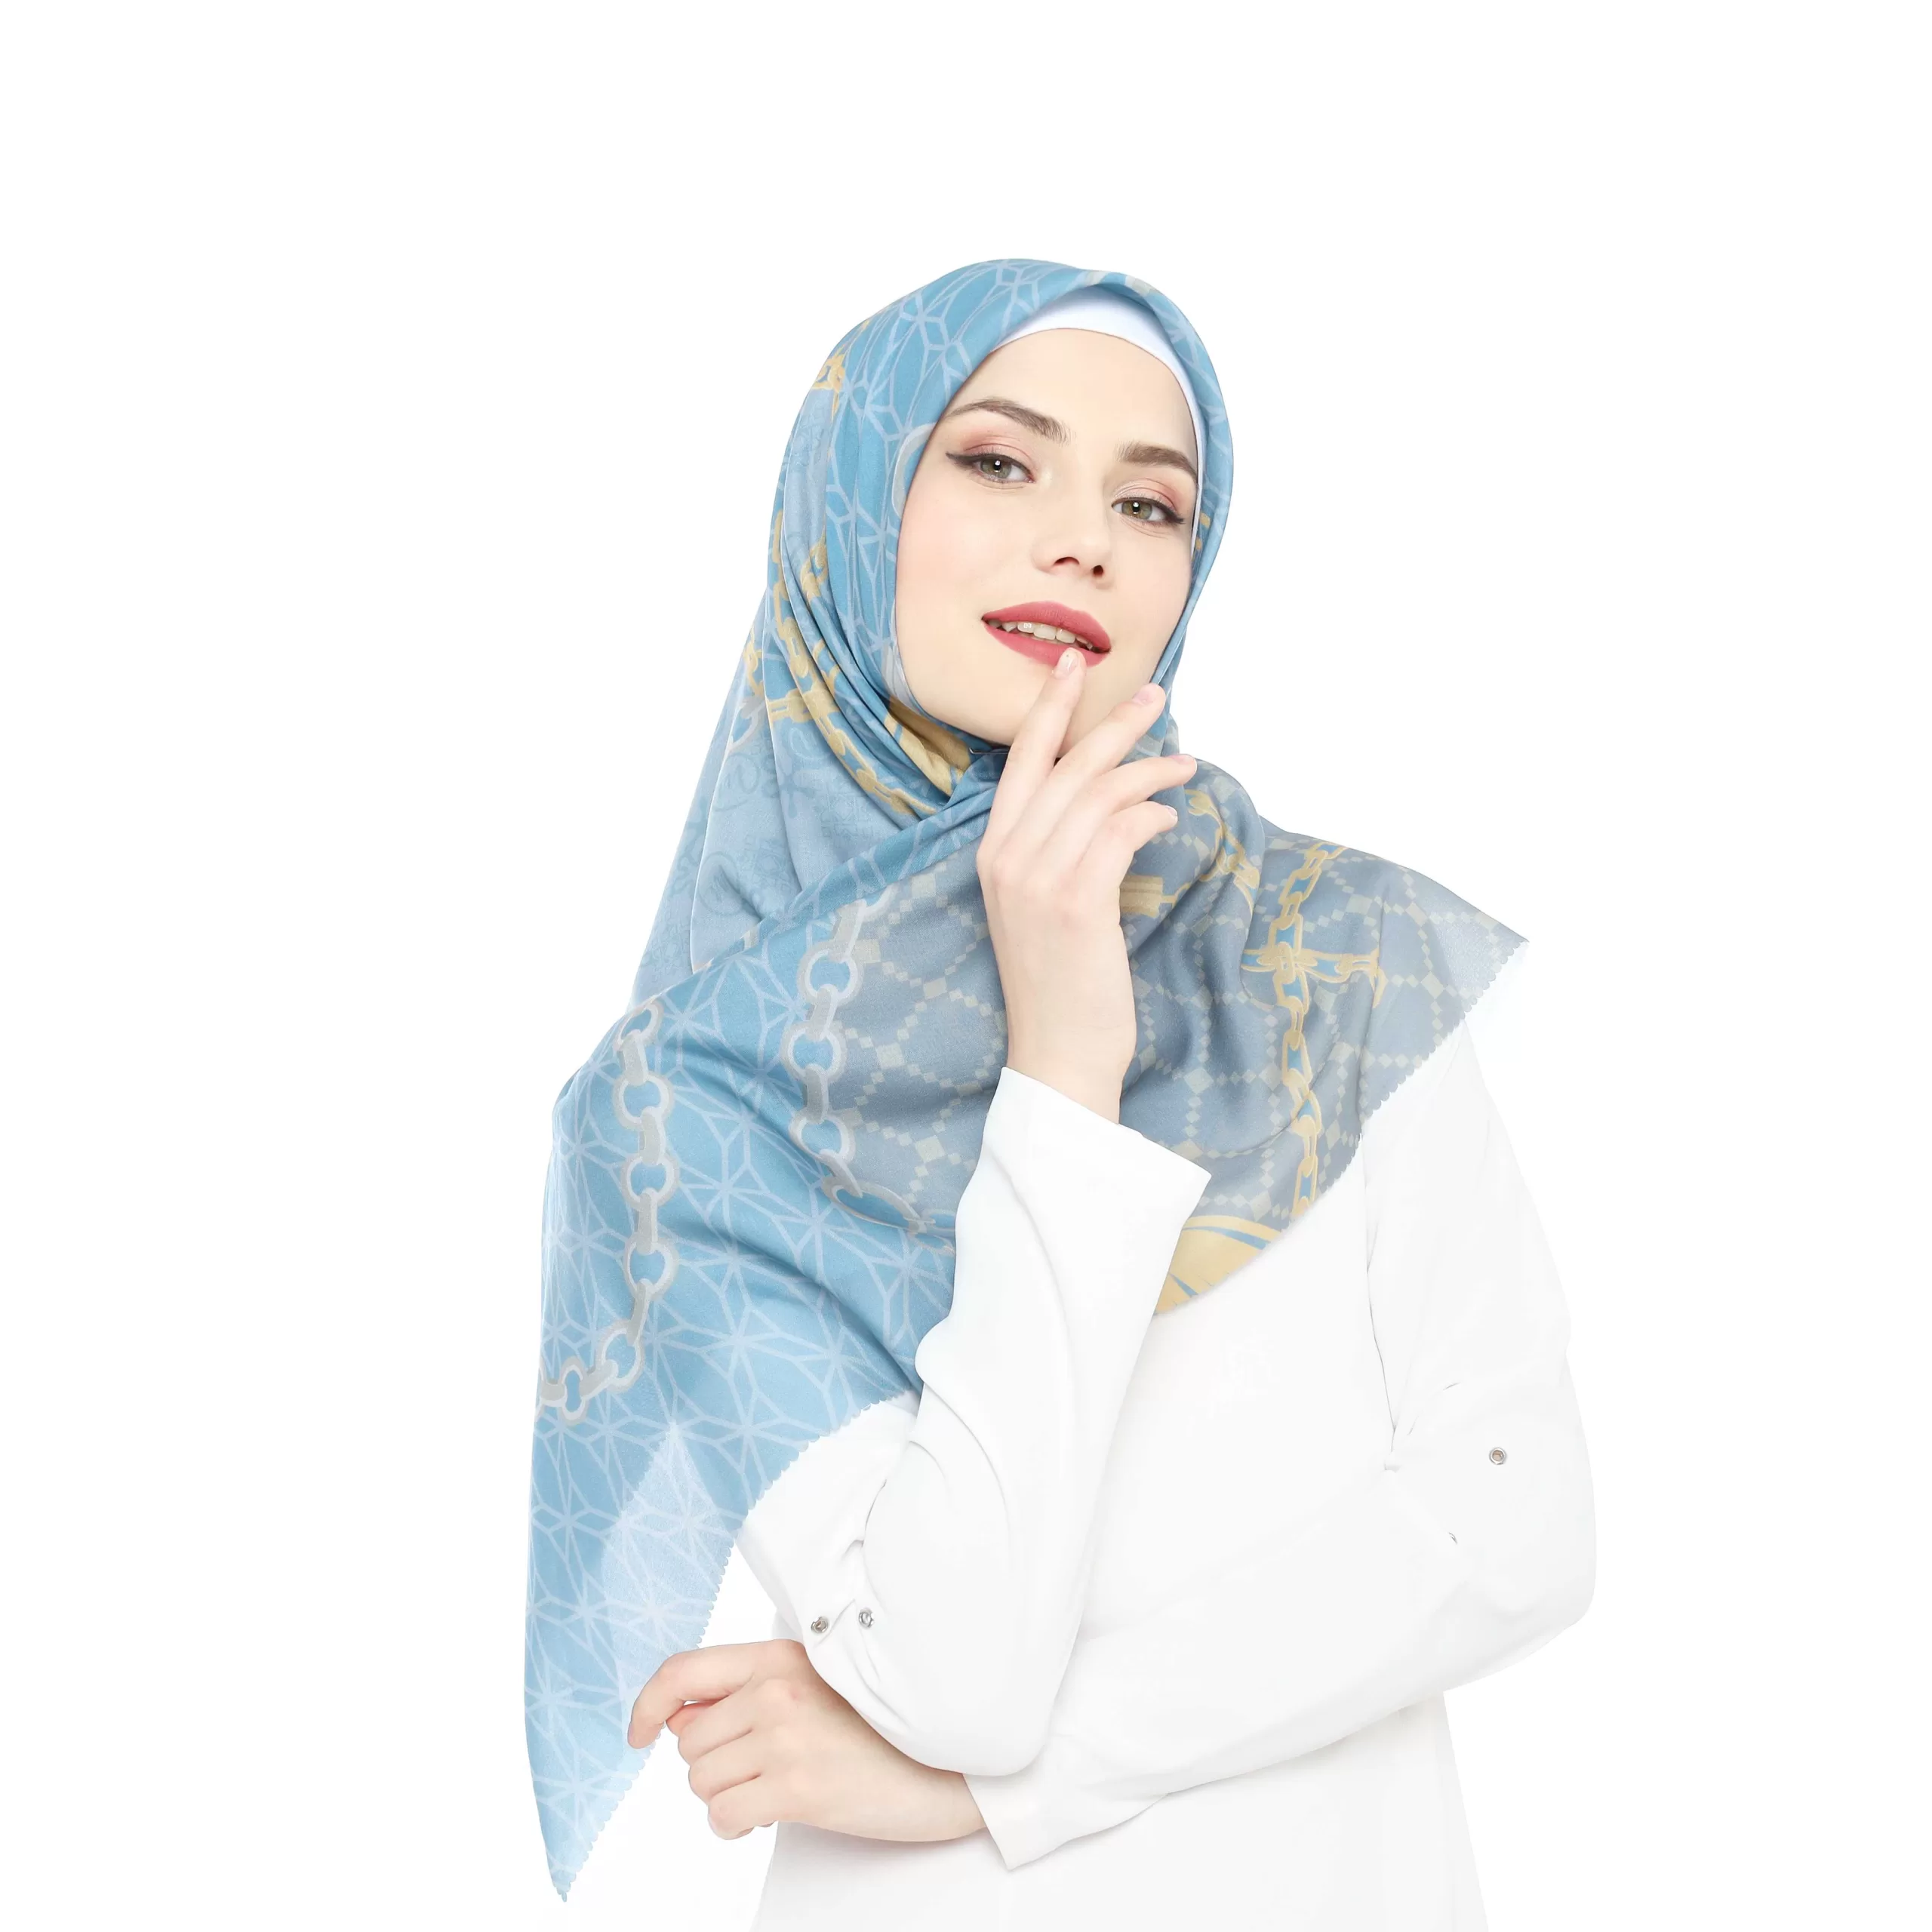 Bisnis hijab printing bisa dibilang termasuk salah satu jenis bisnis […]